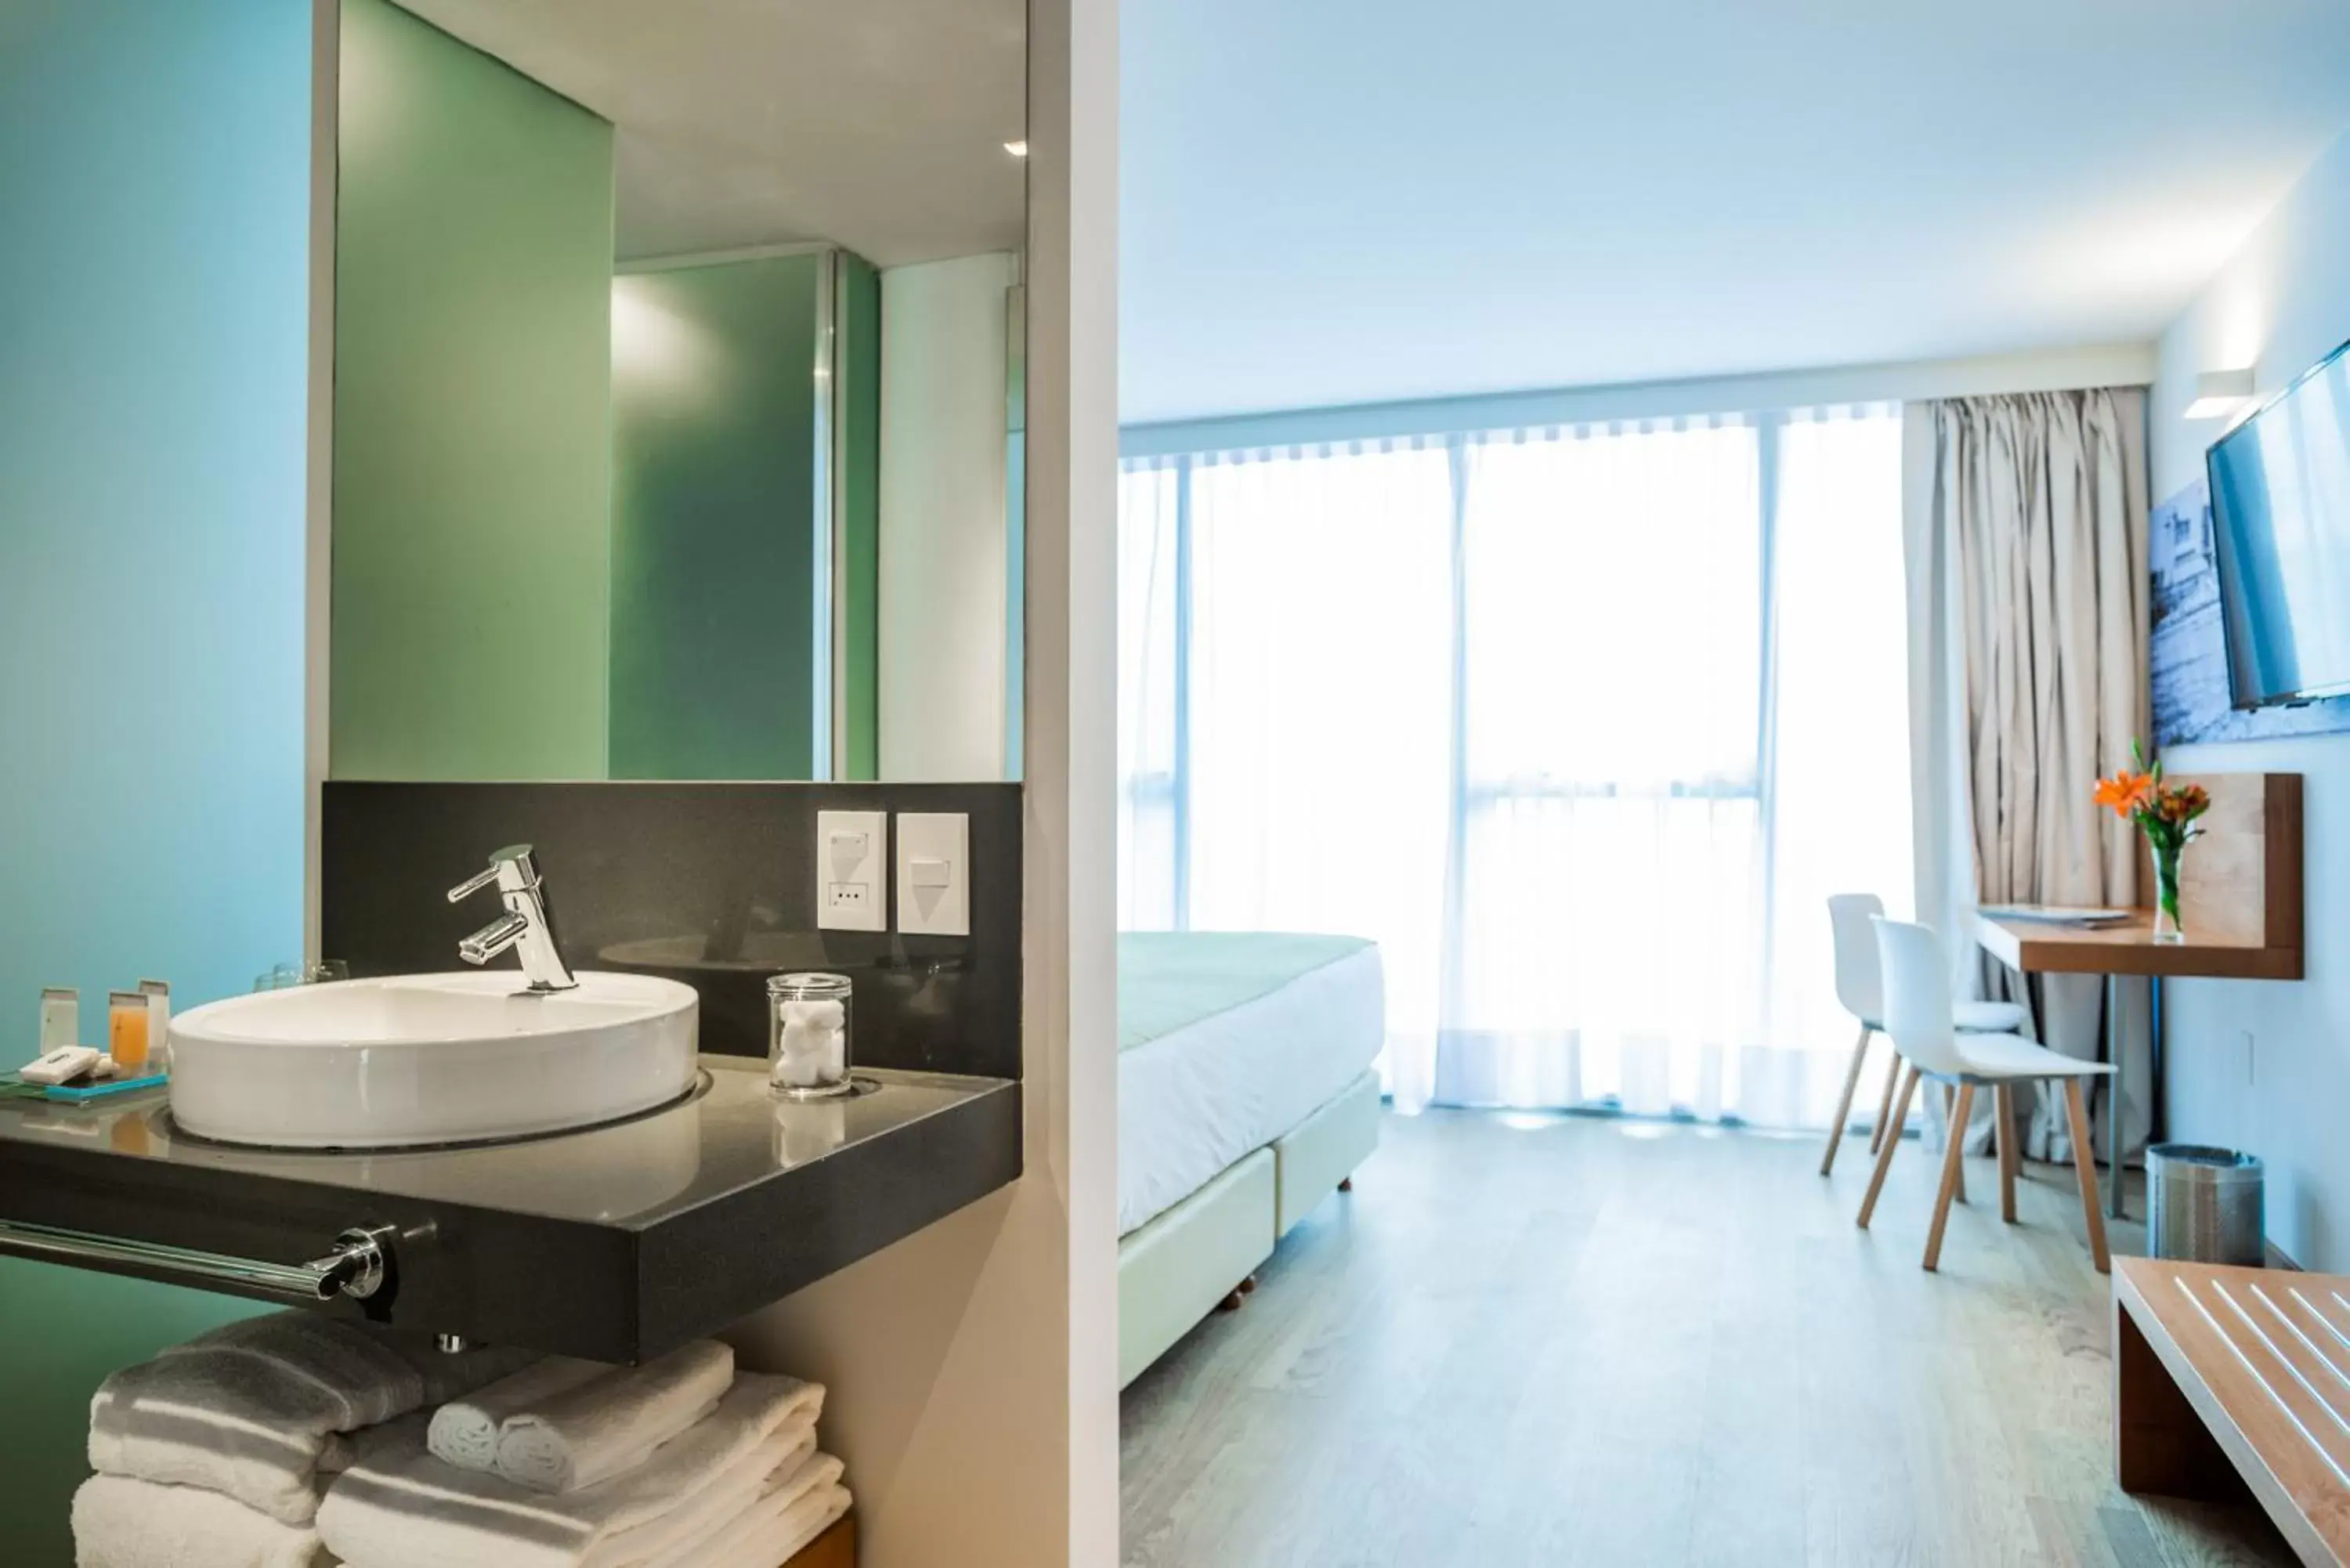 Bedroom, Bathroom in Own Montevideo